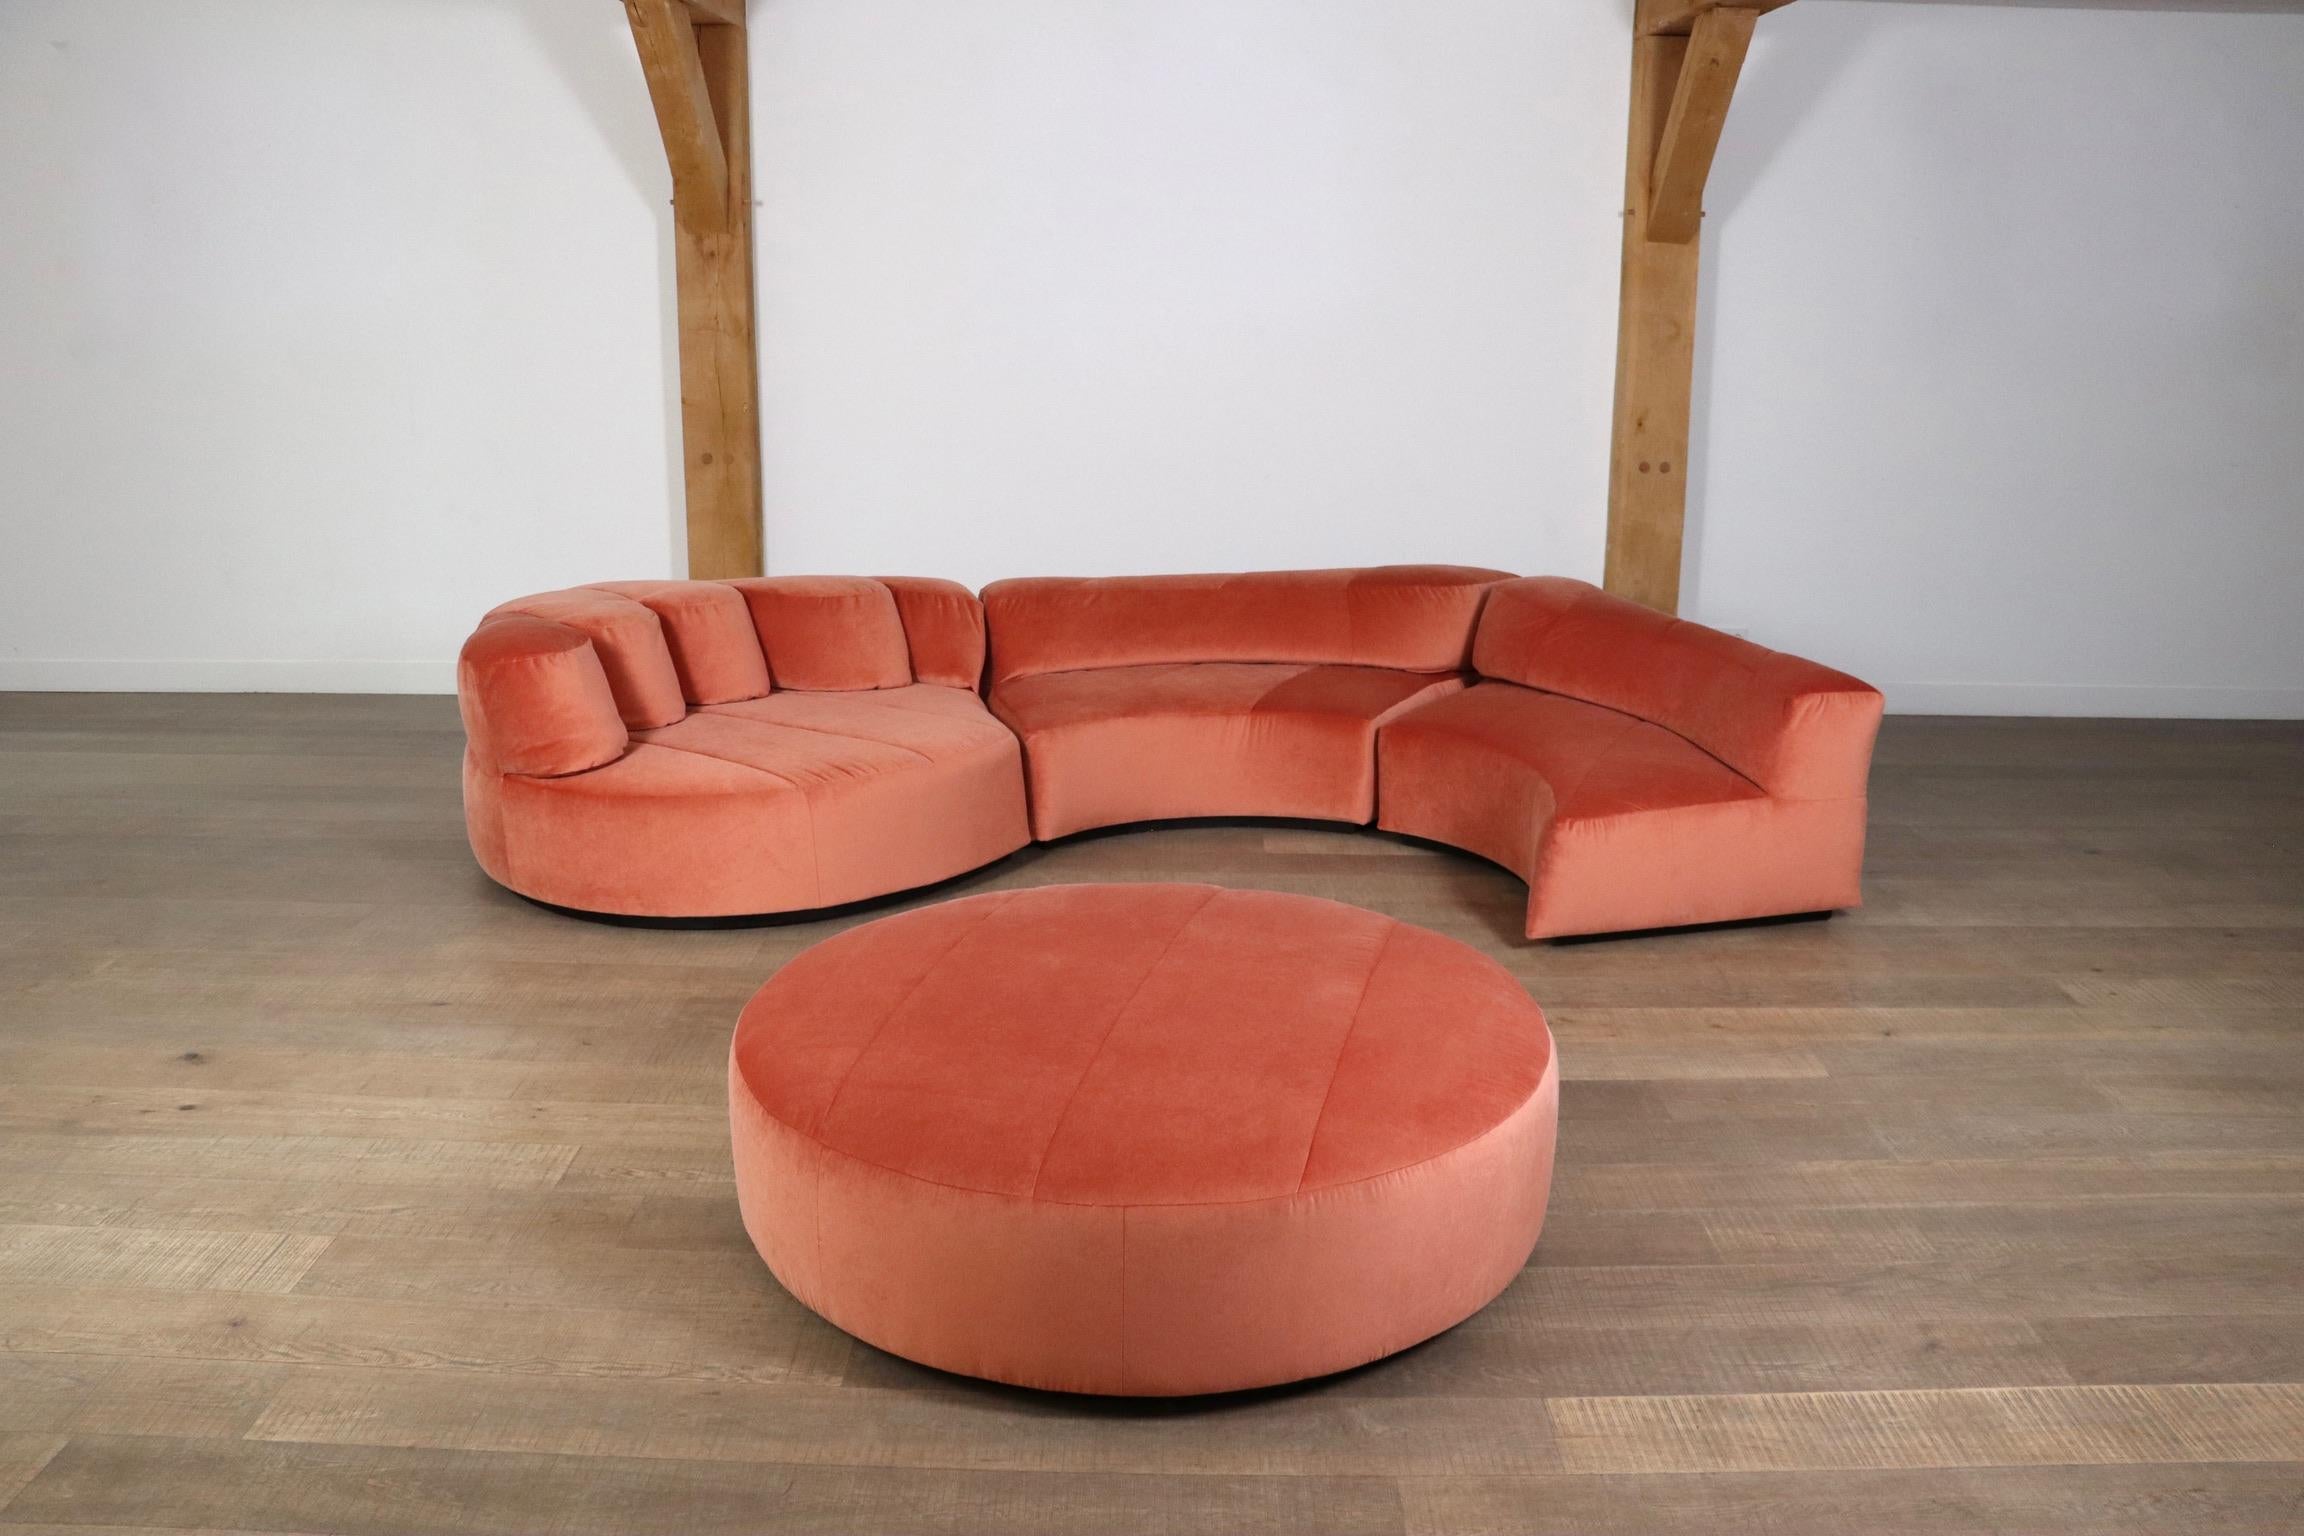 Roche Bobois “Paysage” Sofa In Coral Velvet By Hans Hopfer For Roche Bobois 1974 1